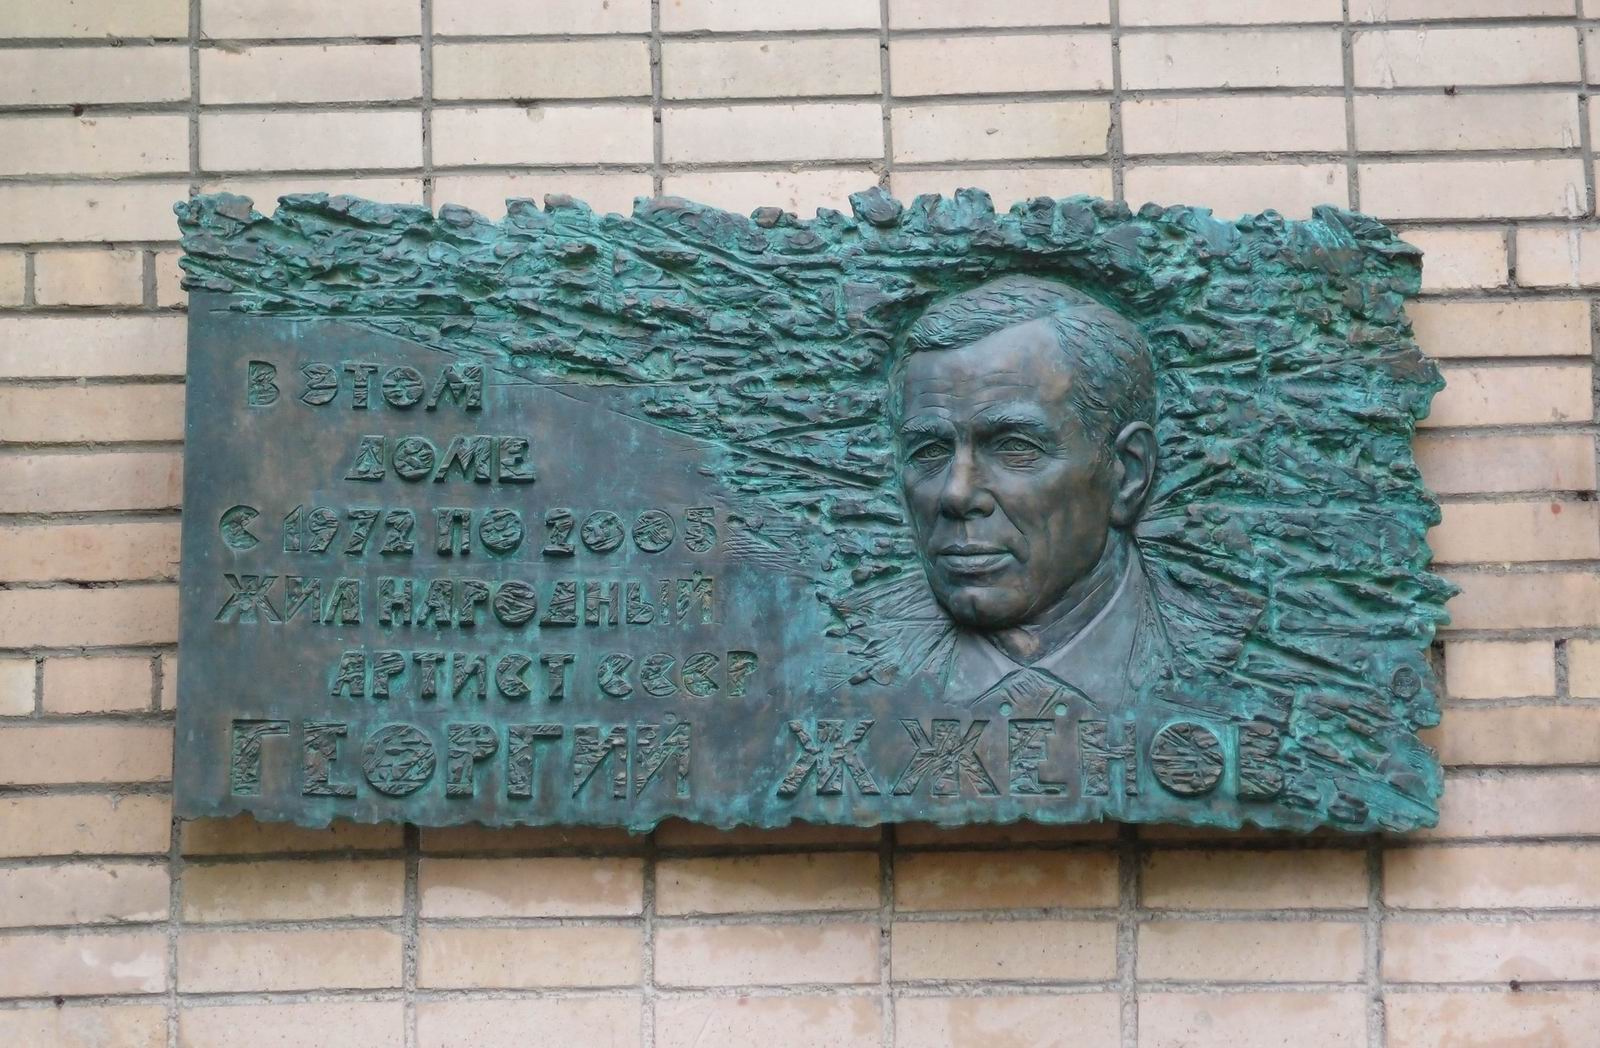 Мемориальная доска Жжёнову Г.С. (1915-2005), ск. А.Балашов, арх. В.Бухаев, на Зоологической улице, дом 12, корпус 2, открыта в марте 2010.